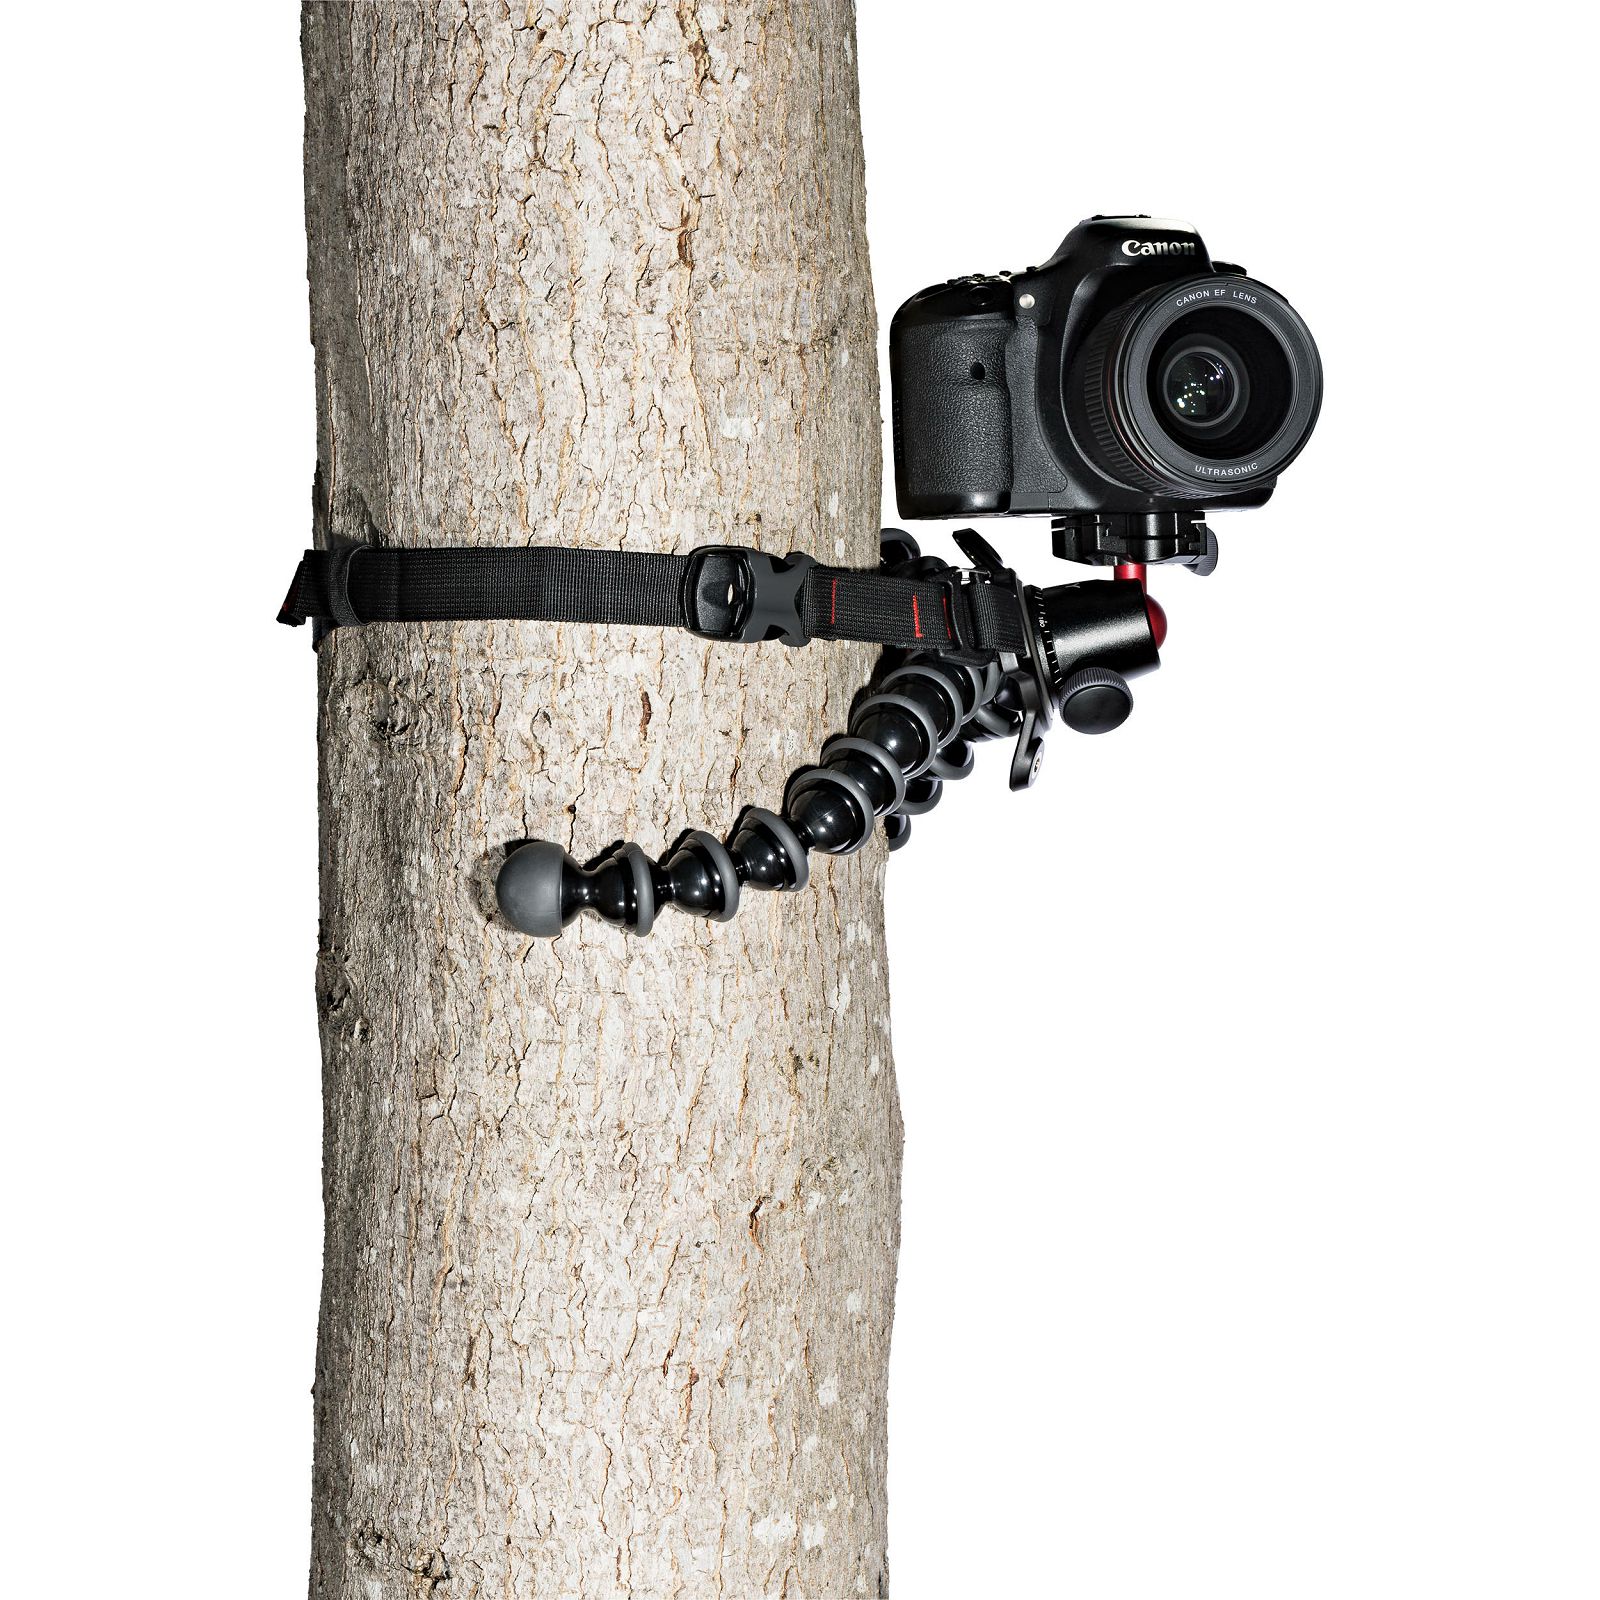 Joby GorillaPod Rig Black Grey zglobni podesivi stativ s kuglastom glavom i arca swiss pločicom za fotoaparat (JB01522)